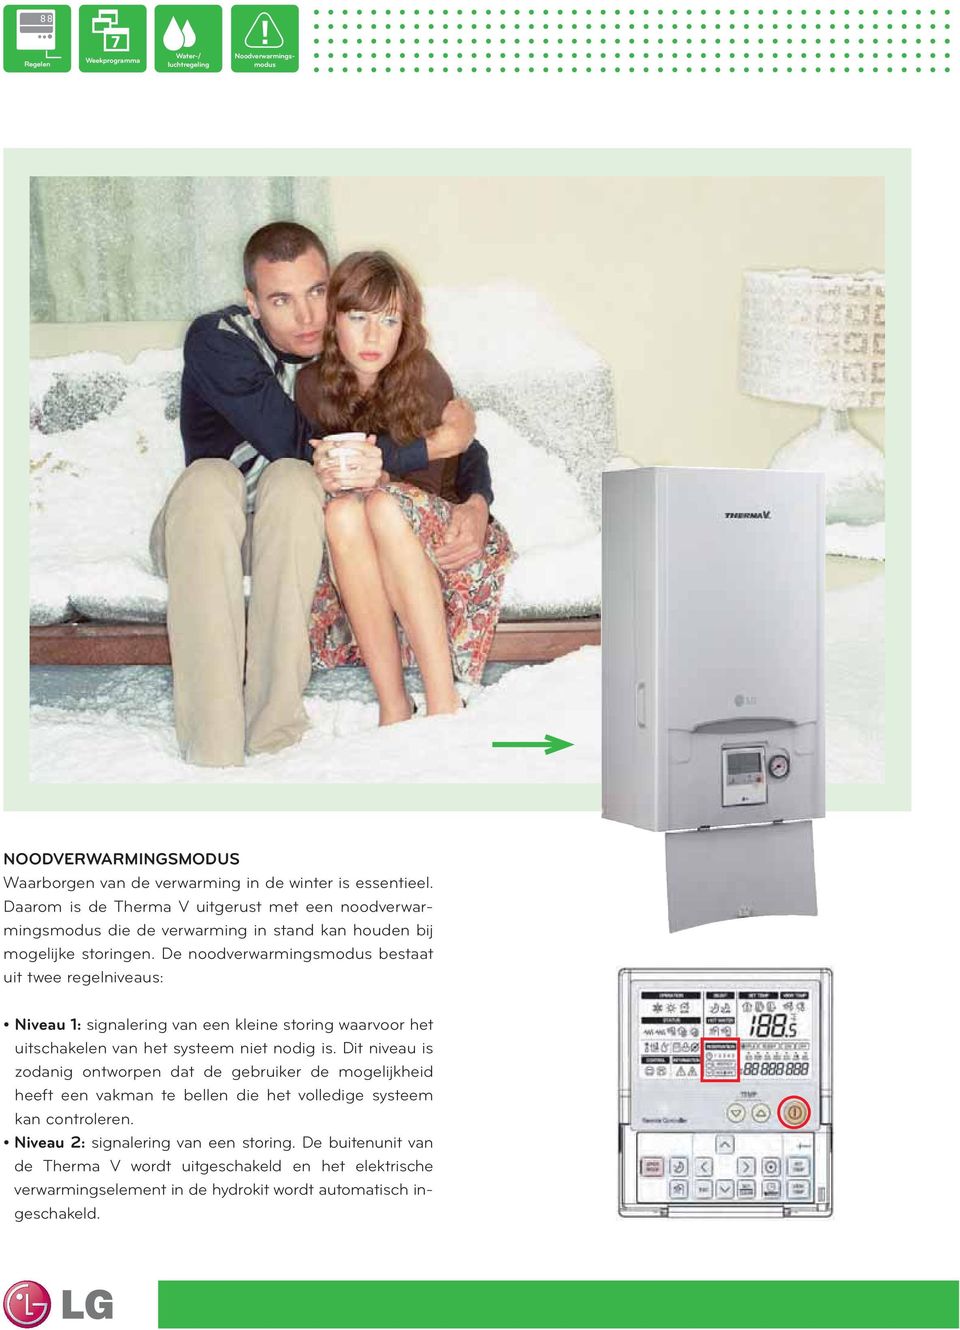 De noodverwarmingsmodus bestaat uit twee regelniveaus: signalering van een kleine storing waarvoor het uitschakelen van het systeem niet nodig is.